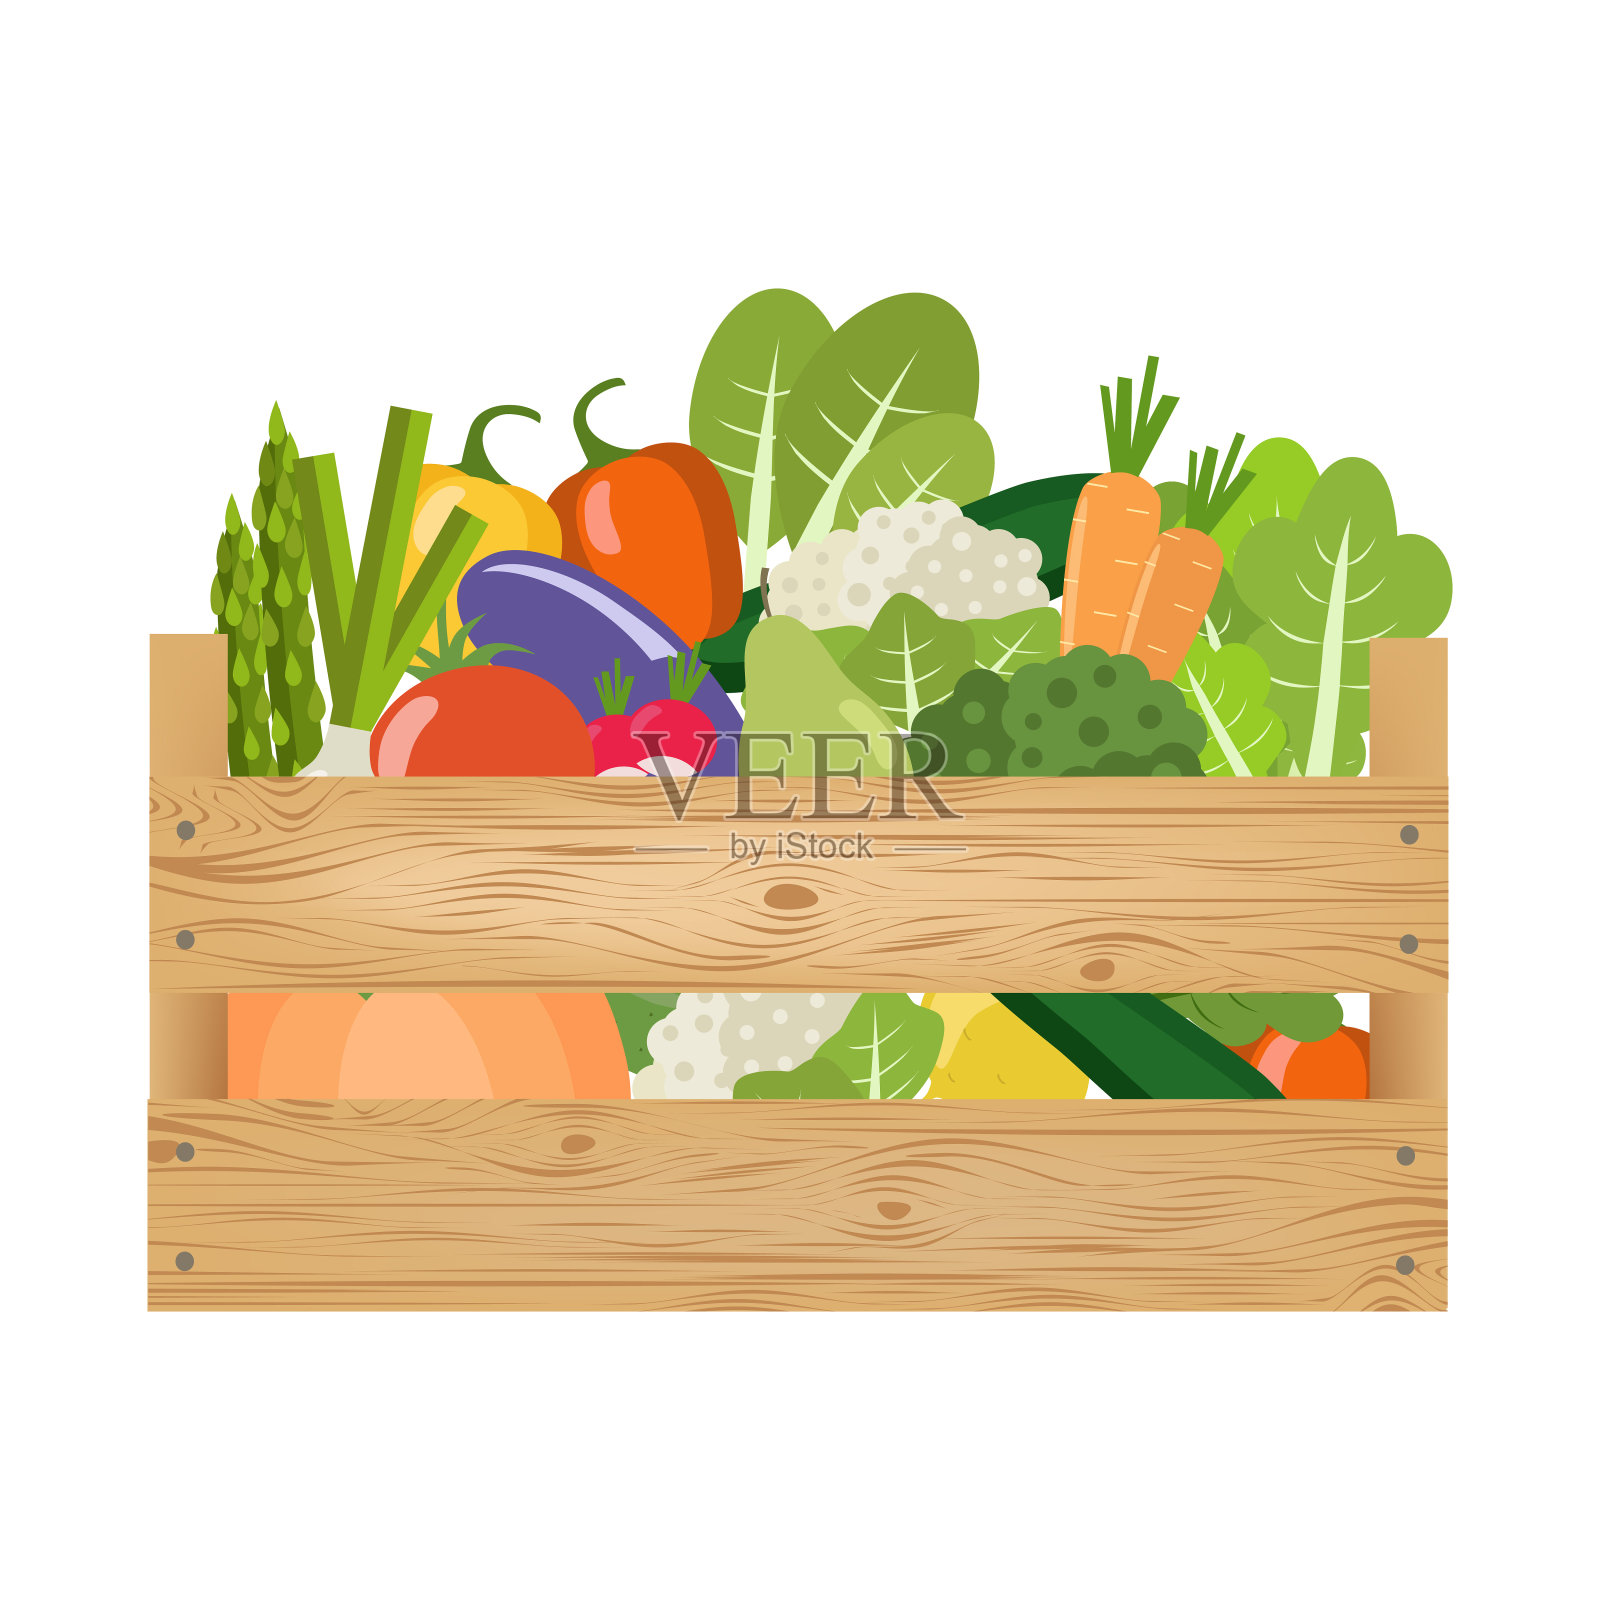 装着蔬菜和水果的木箱。健康的生活方式。插画图片素材